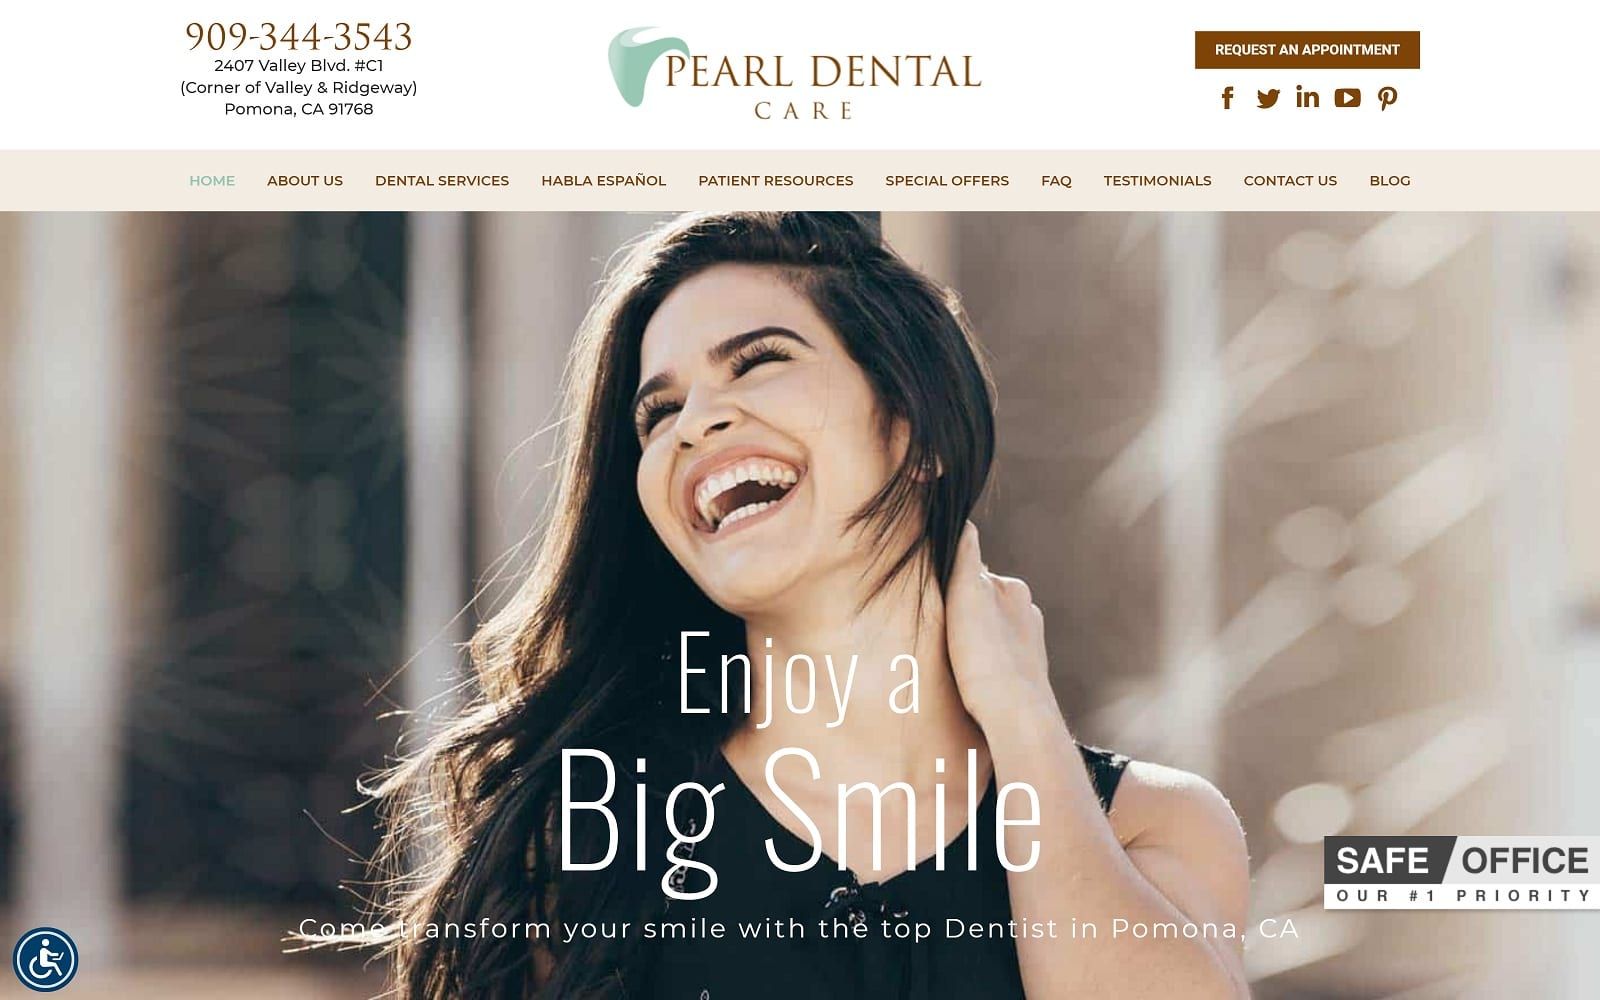 The screenshot of pearl dental care dentalcareofpomona. Com website